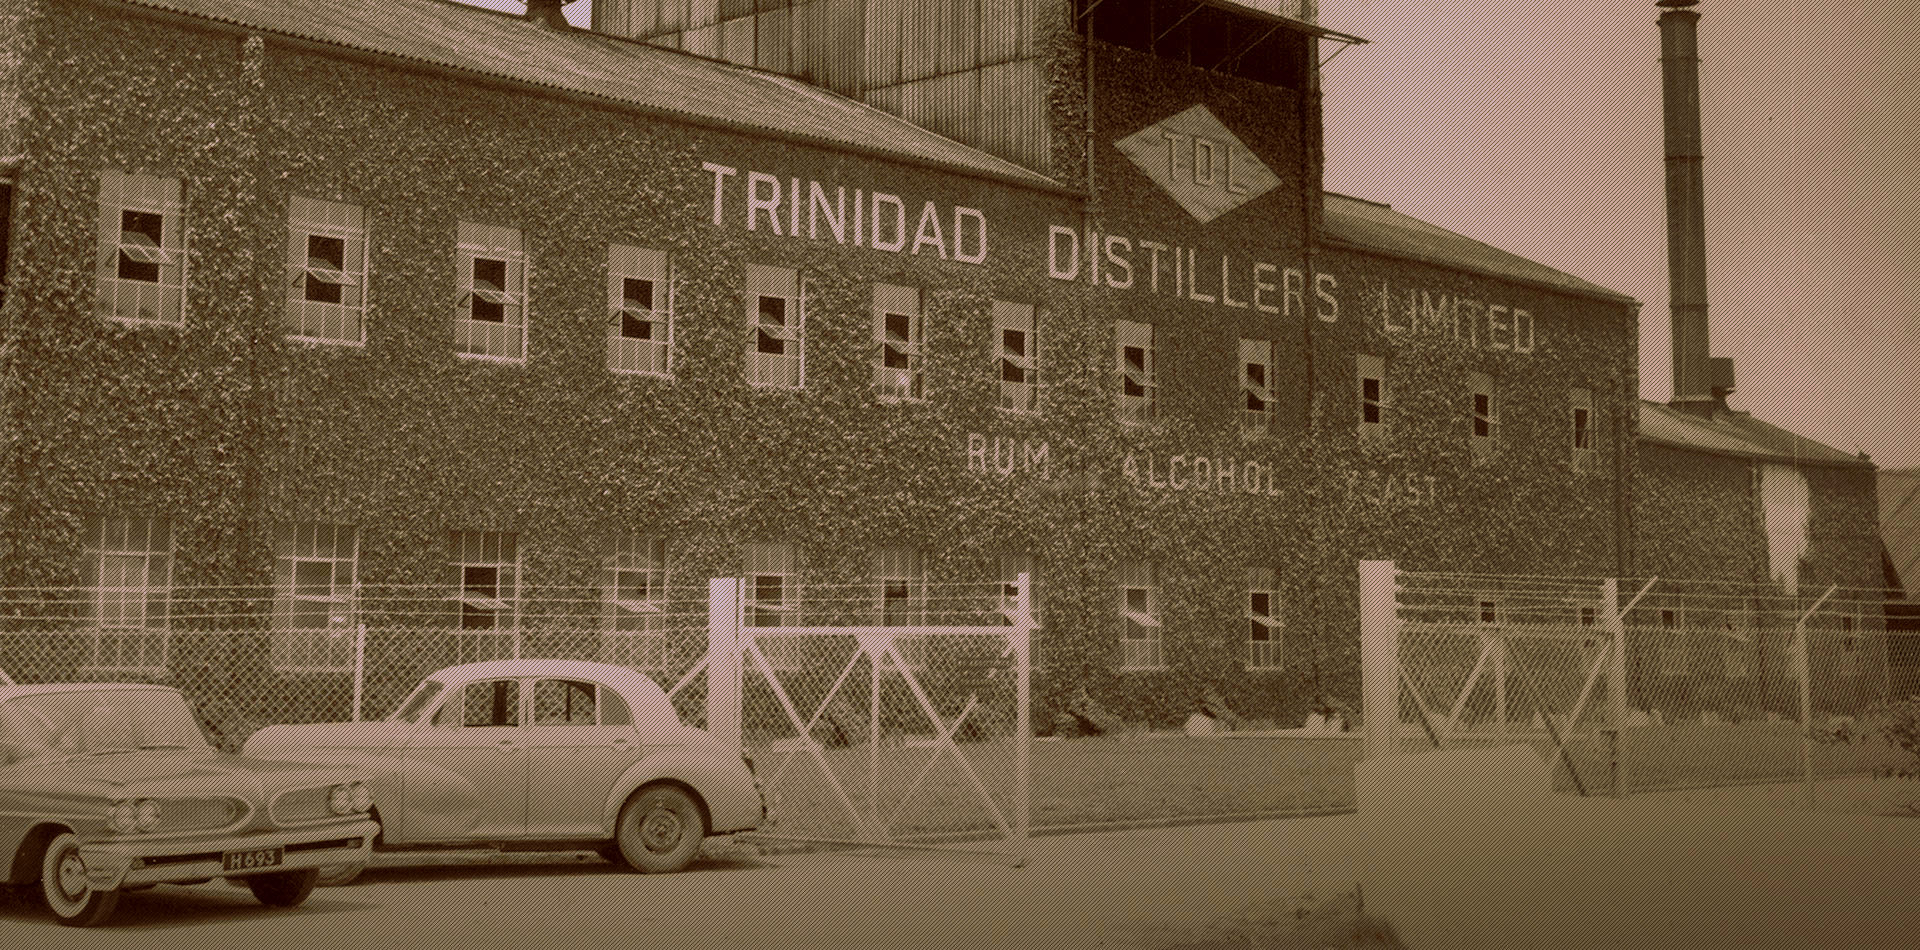 Trinidad Distillers Limited